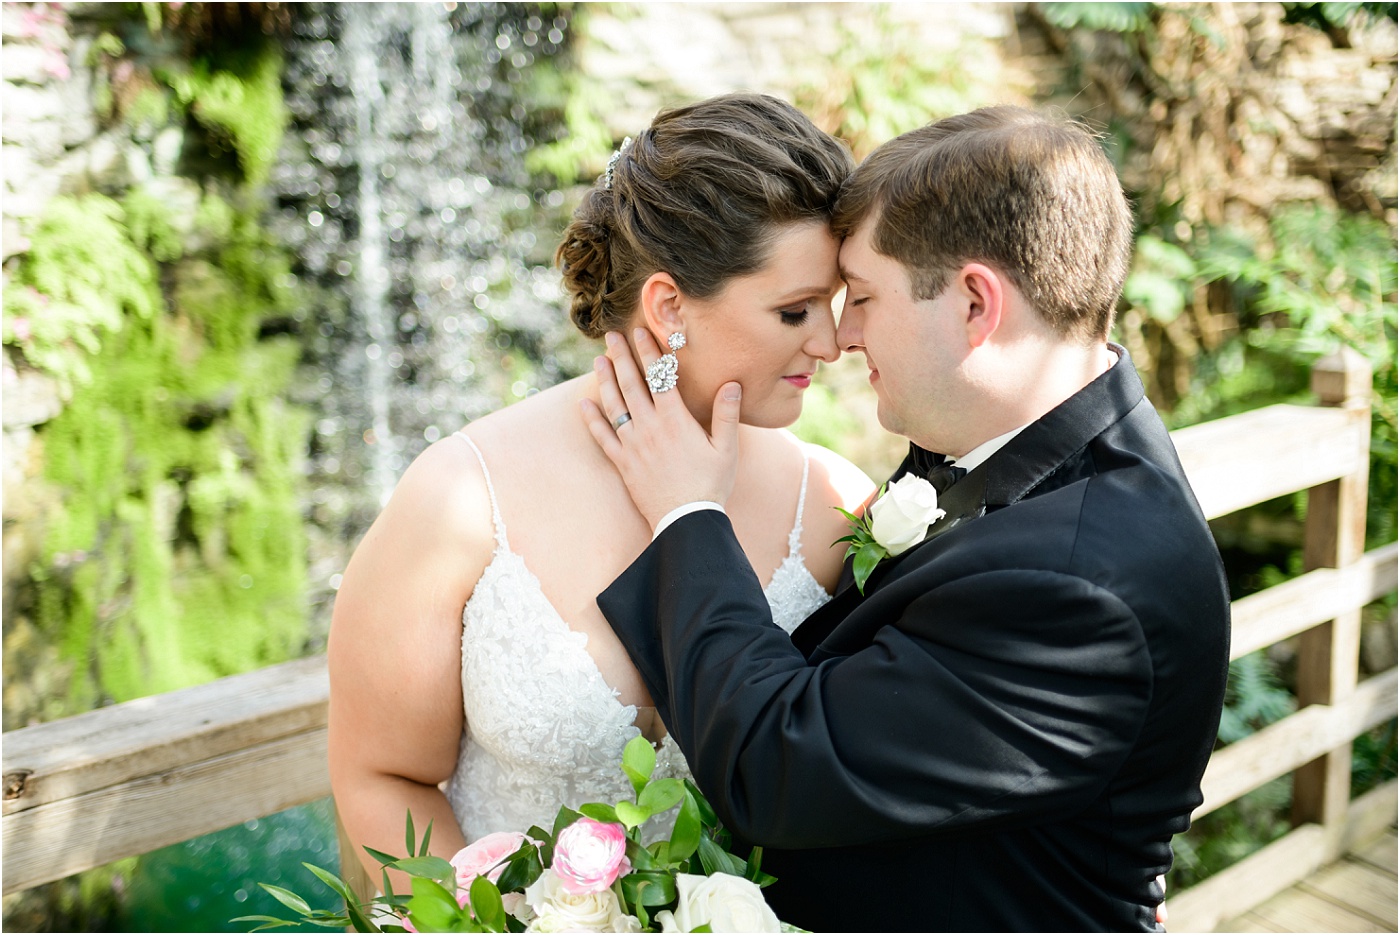 Botanical Garden Wedding Photos | Greater Des Moines Botanical Garden Wedding